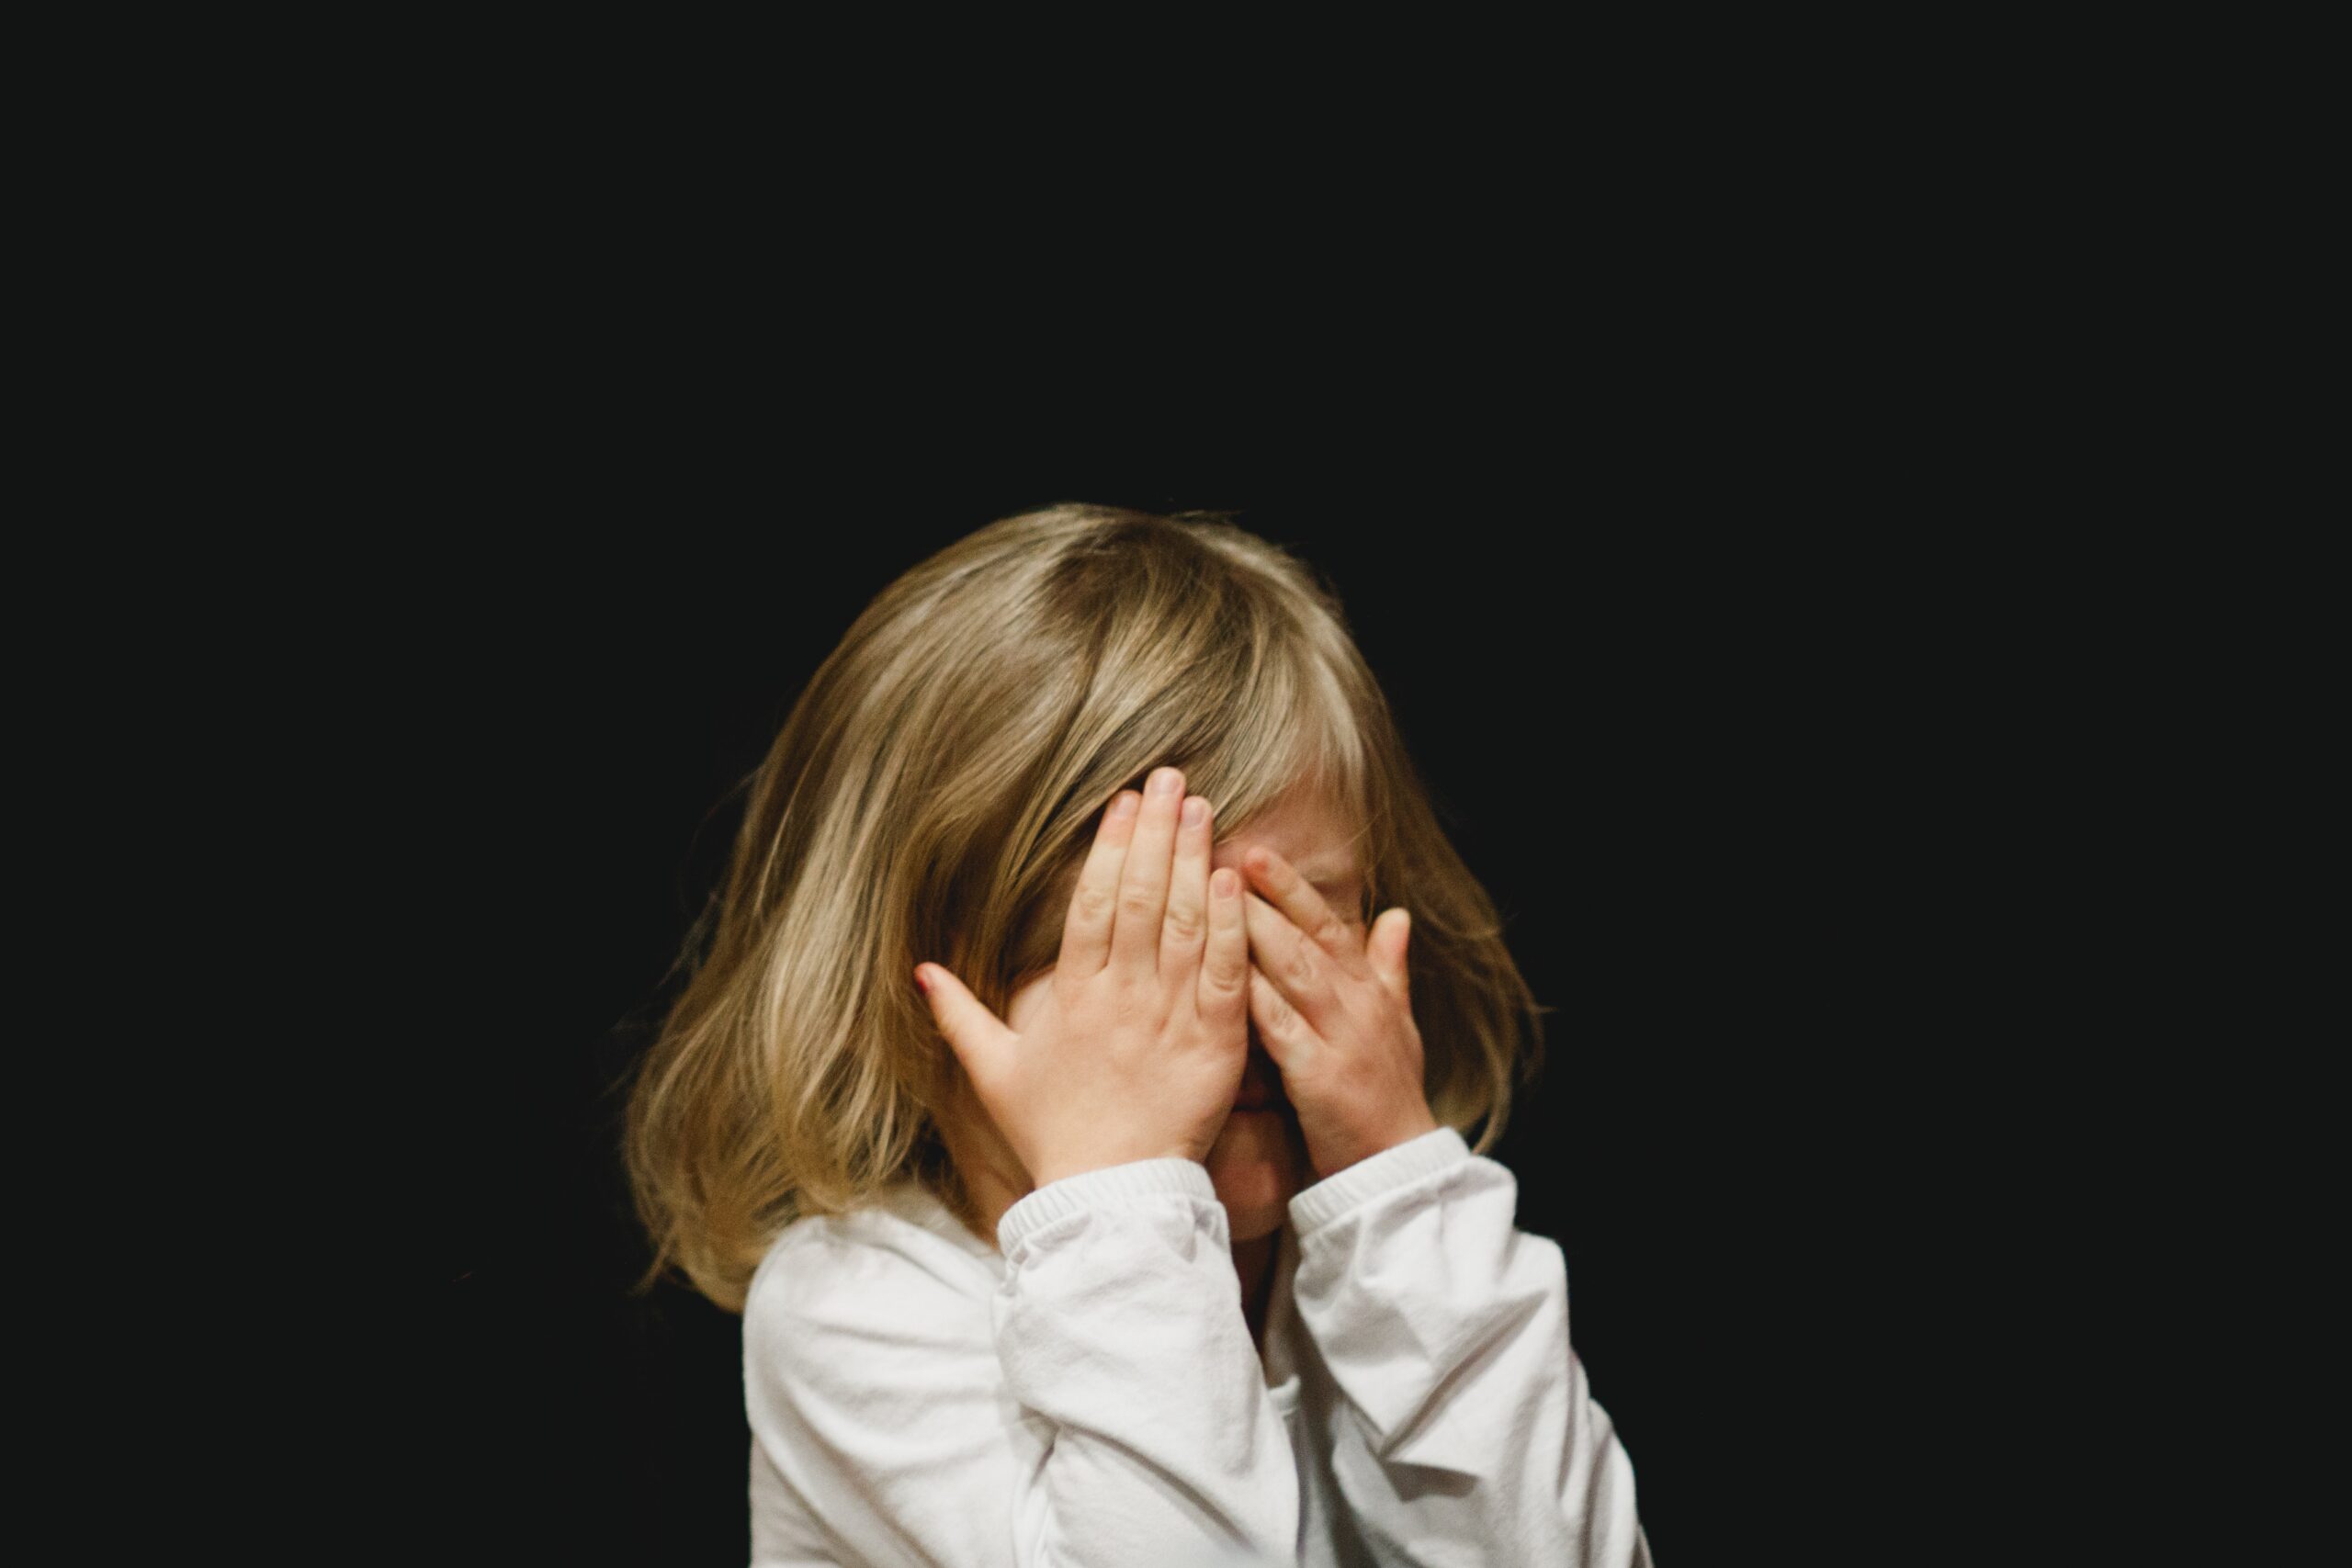 A highly sensitive child struggles with sensory input